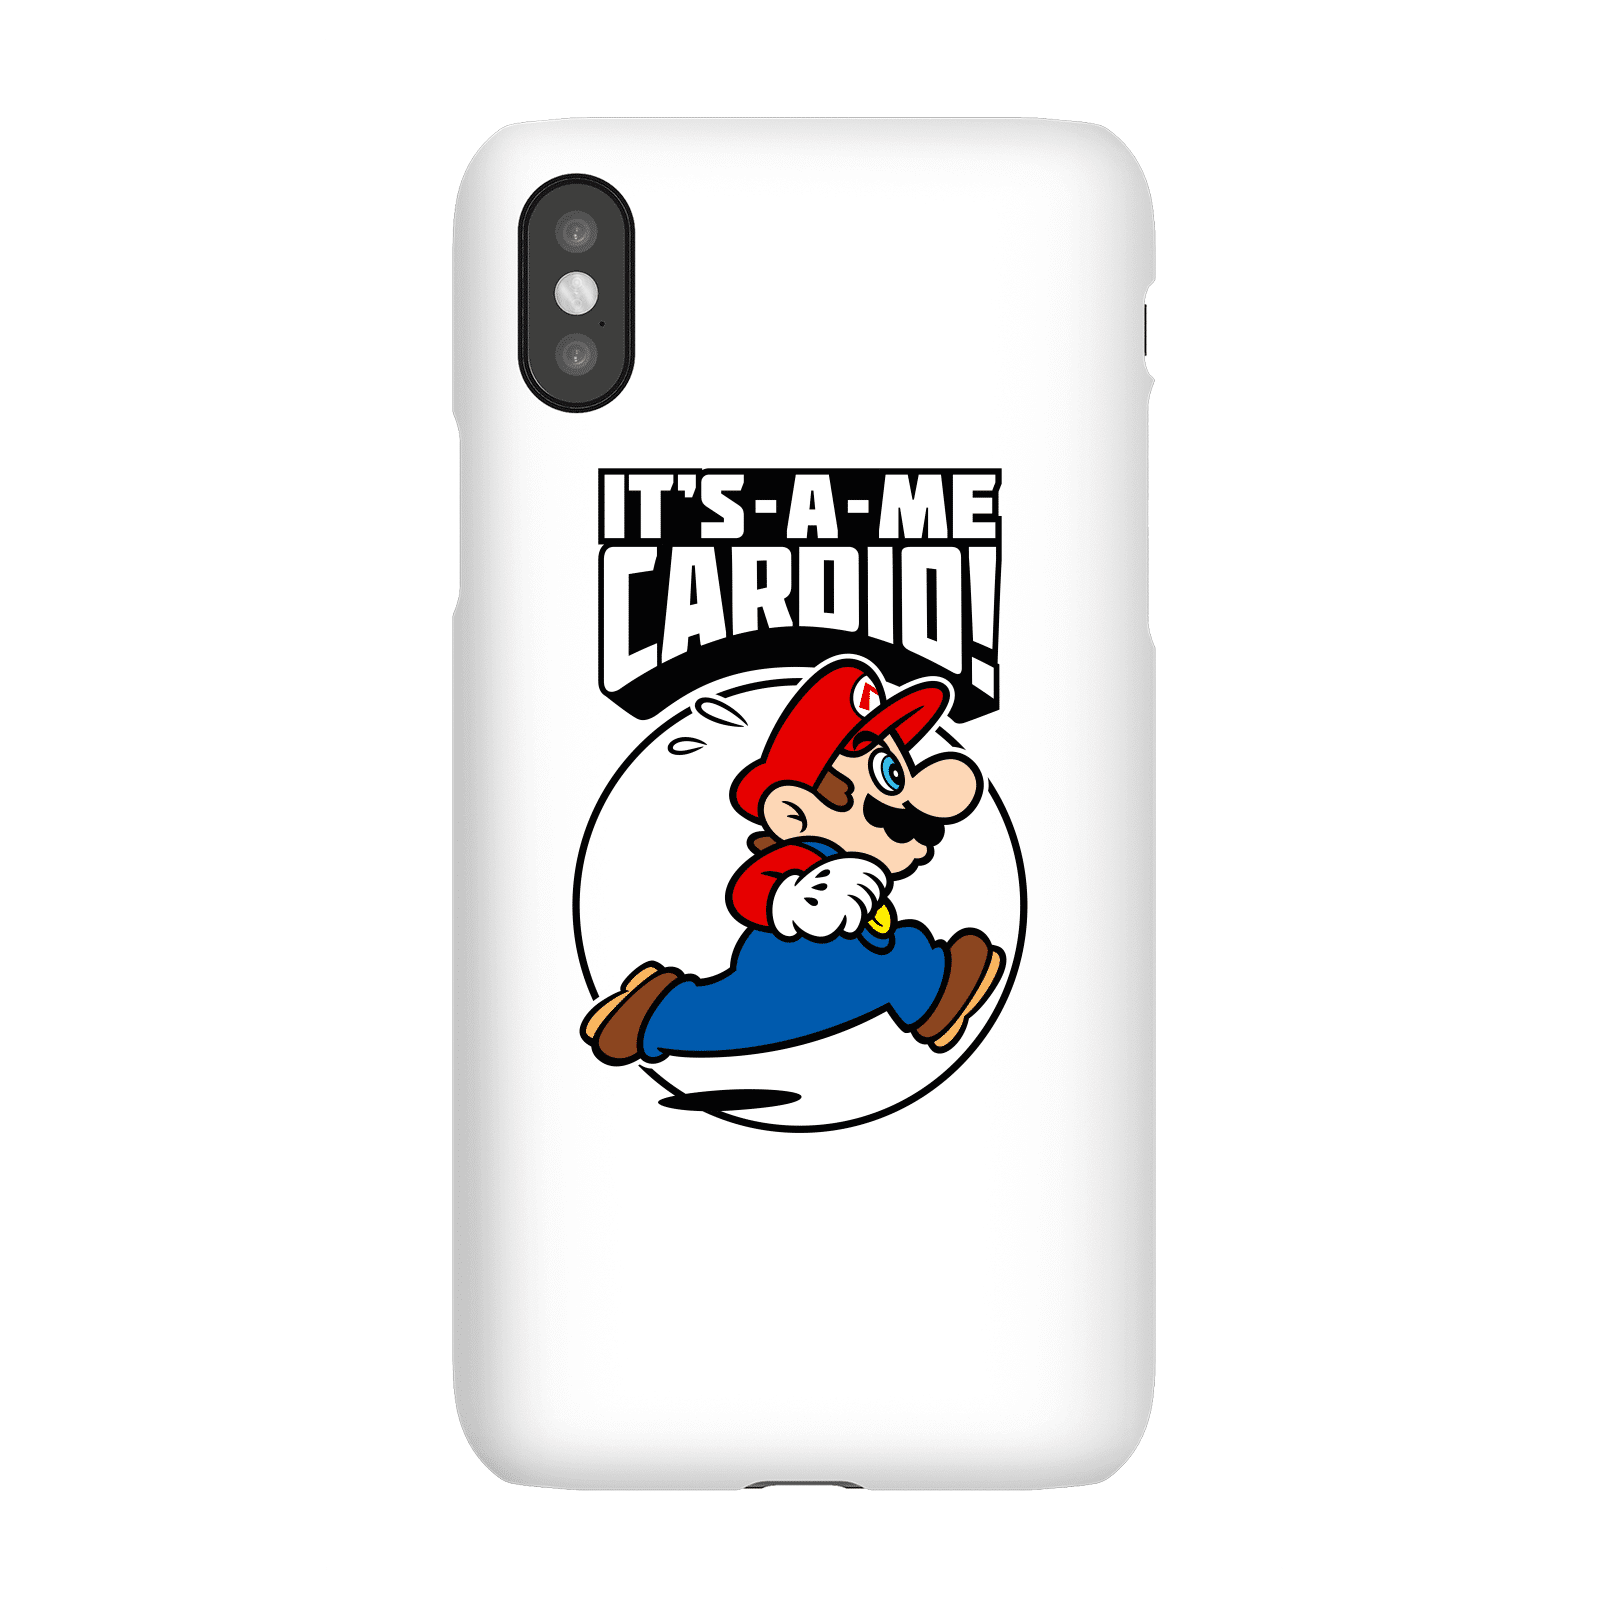 Nintendo Super Mario Cardio Phone Case - iPhone X - Snap Case - Matte